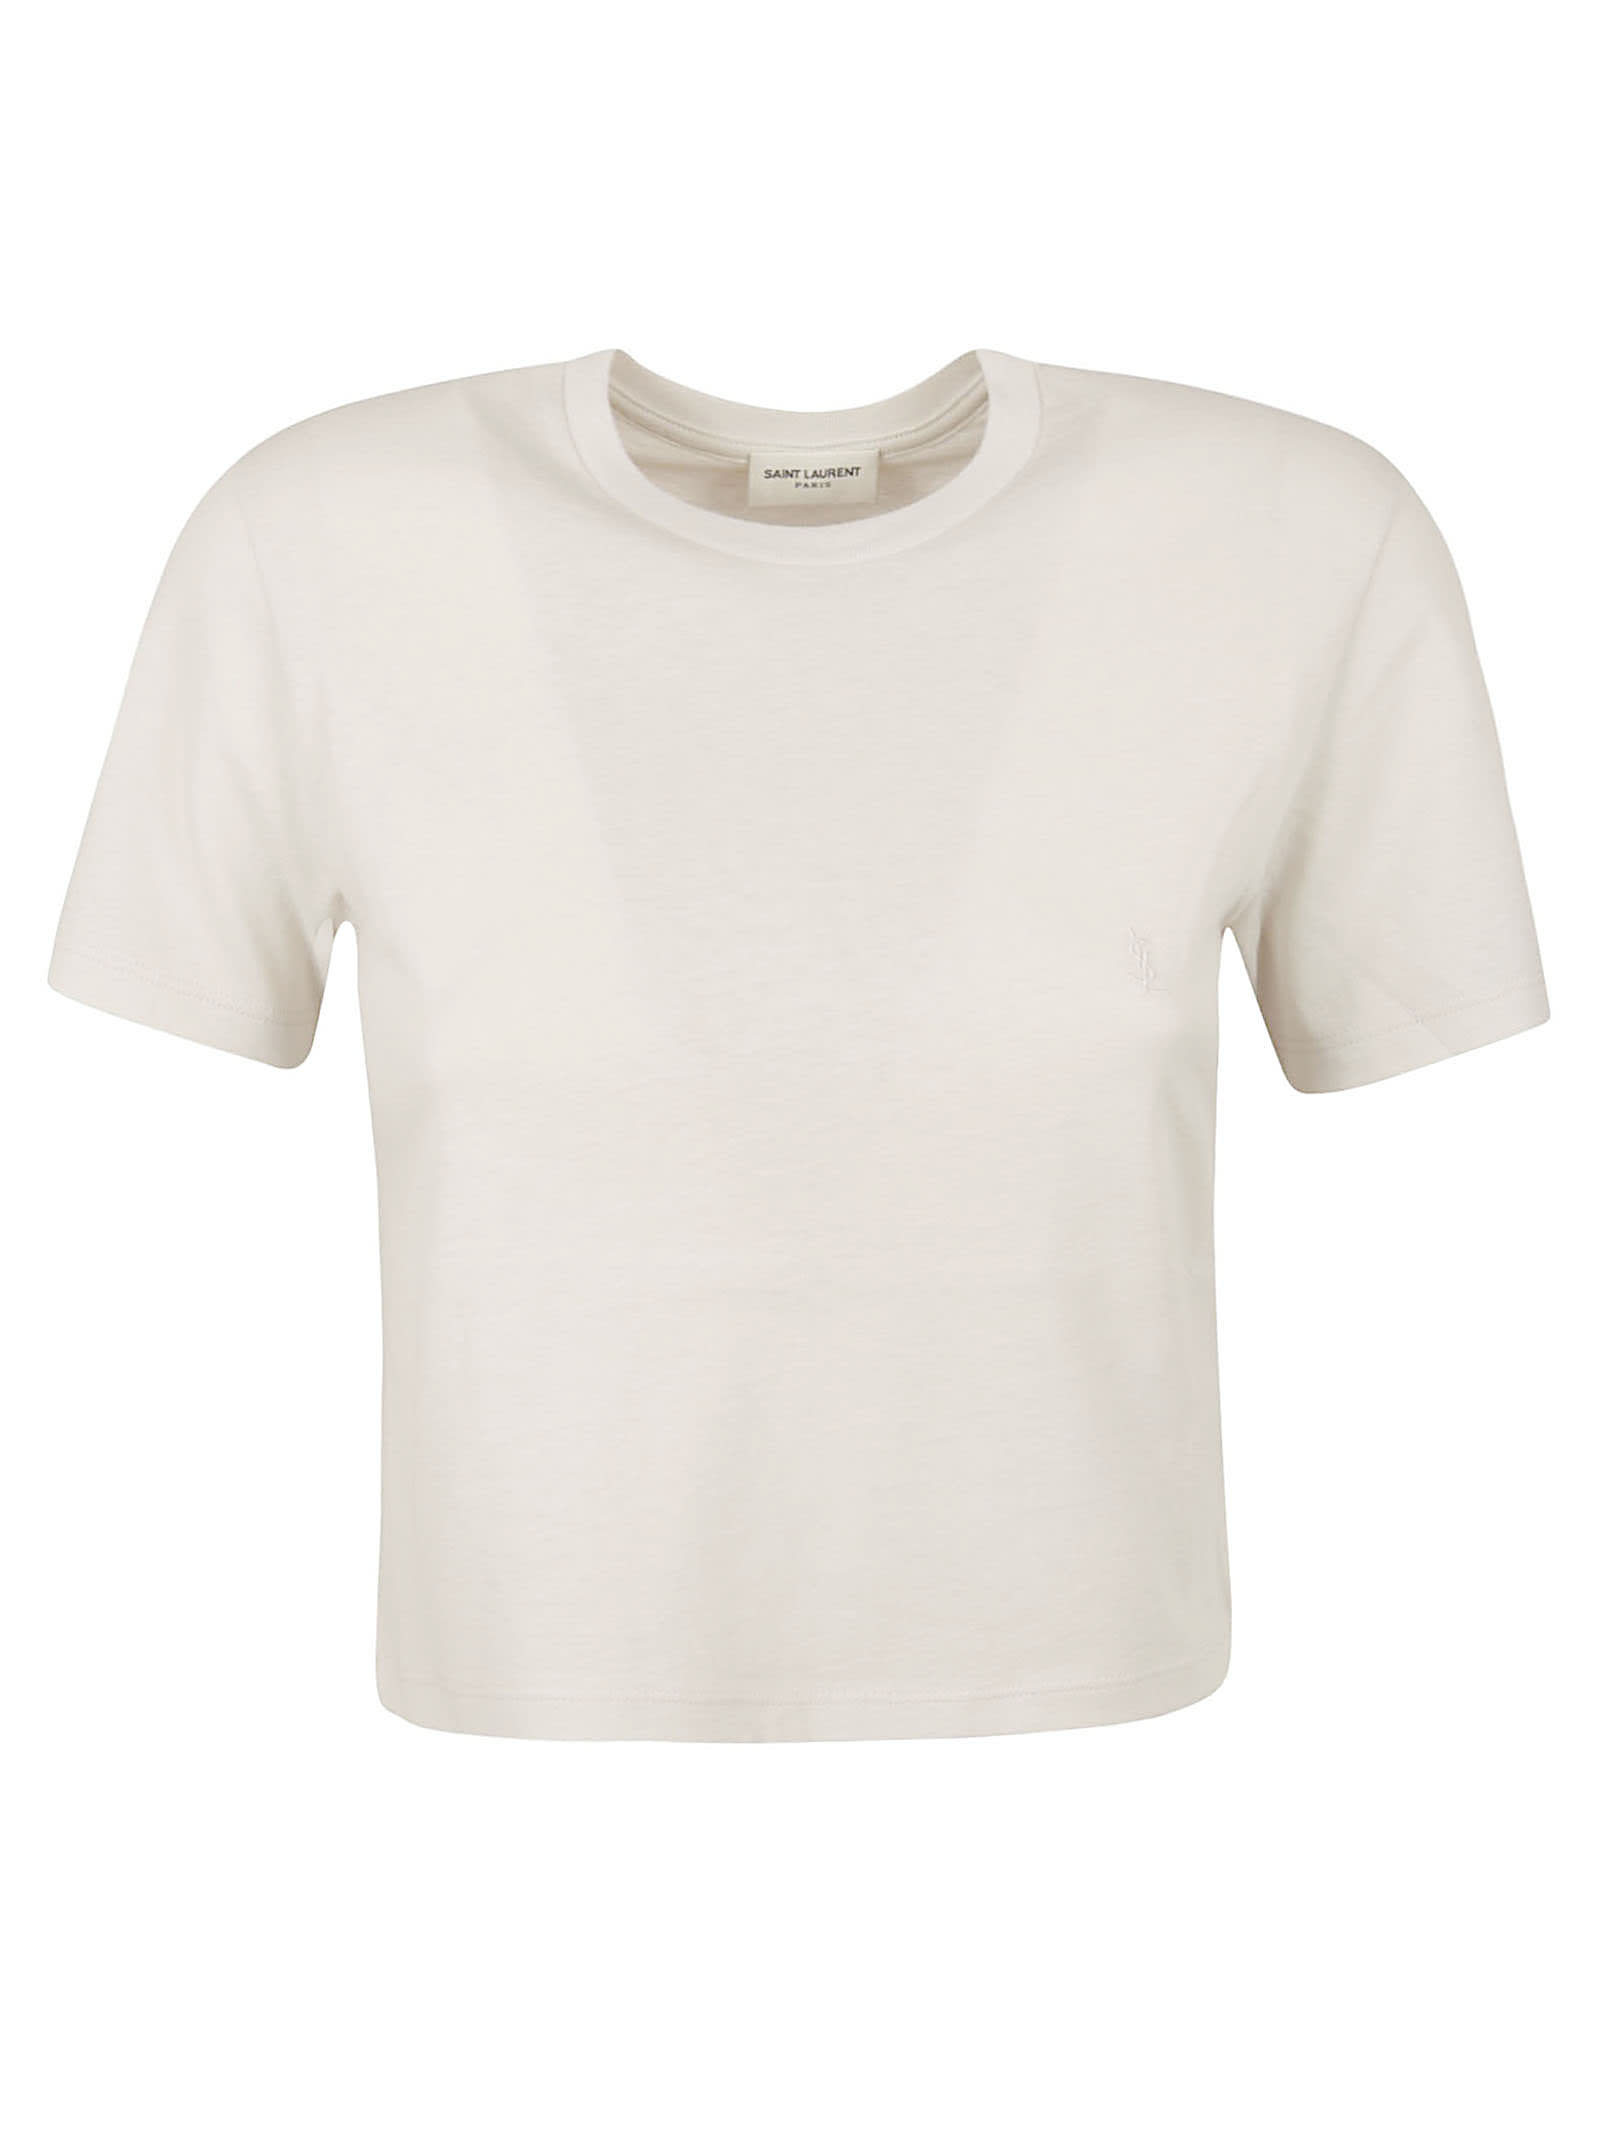 Saint Laurent Cropped Slim T-shirt